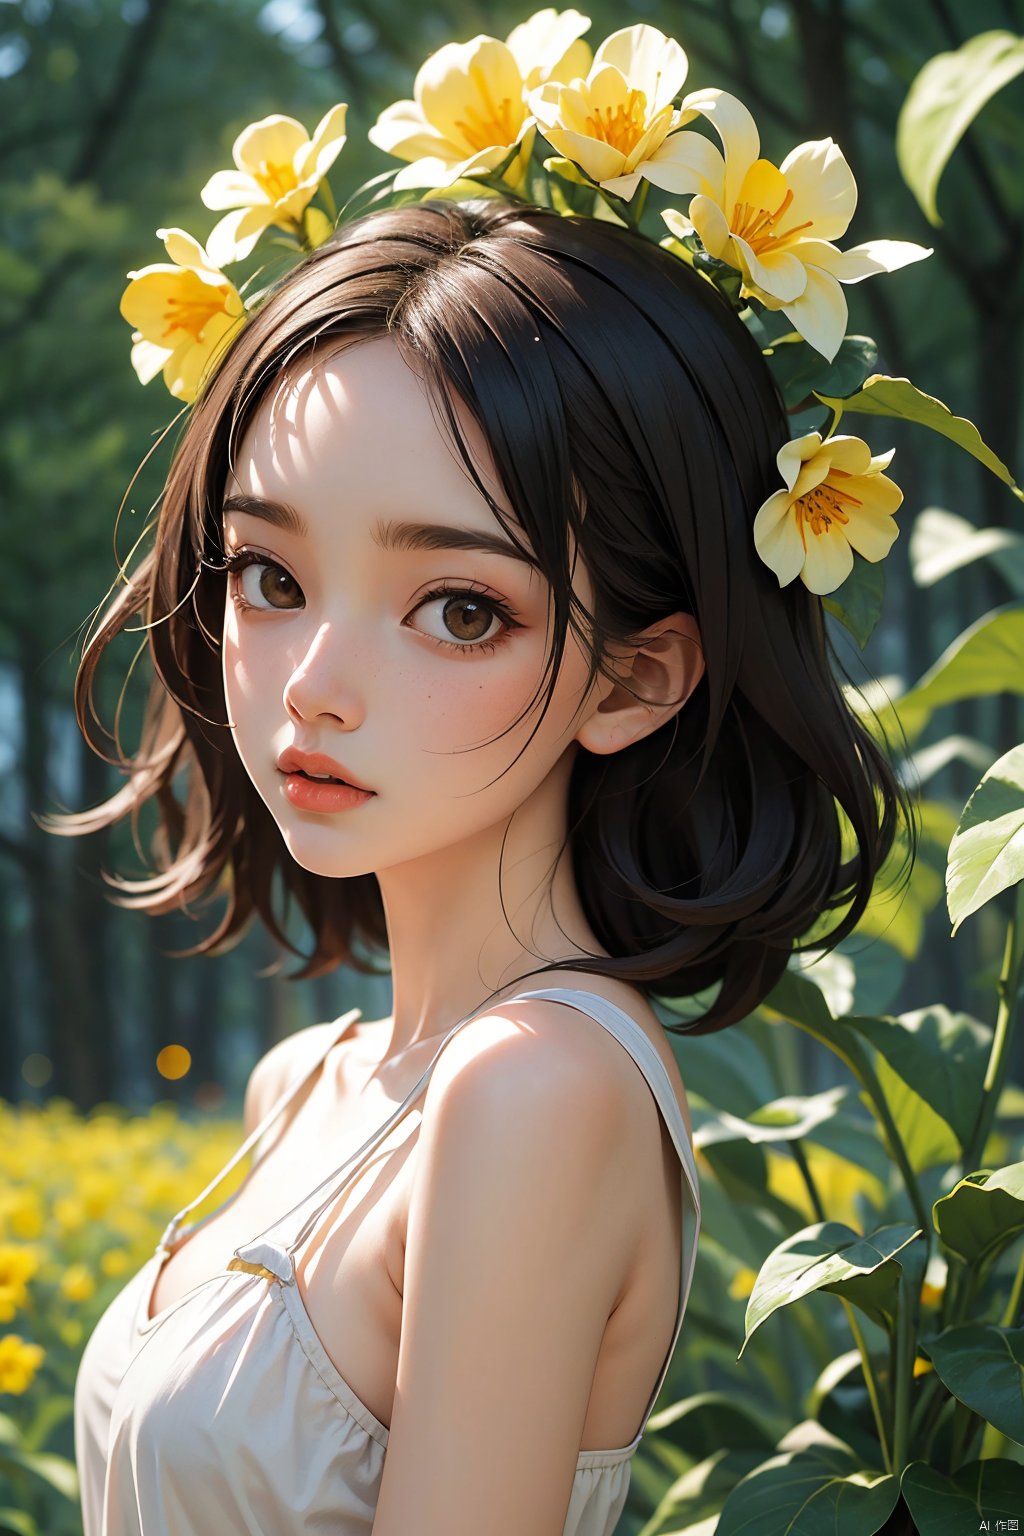  Enhanced, masterpiece, 16K, girl, Solo, Flower Field, rape flower